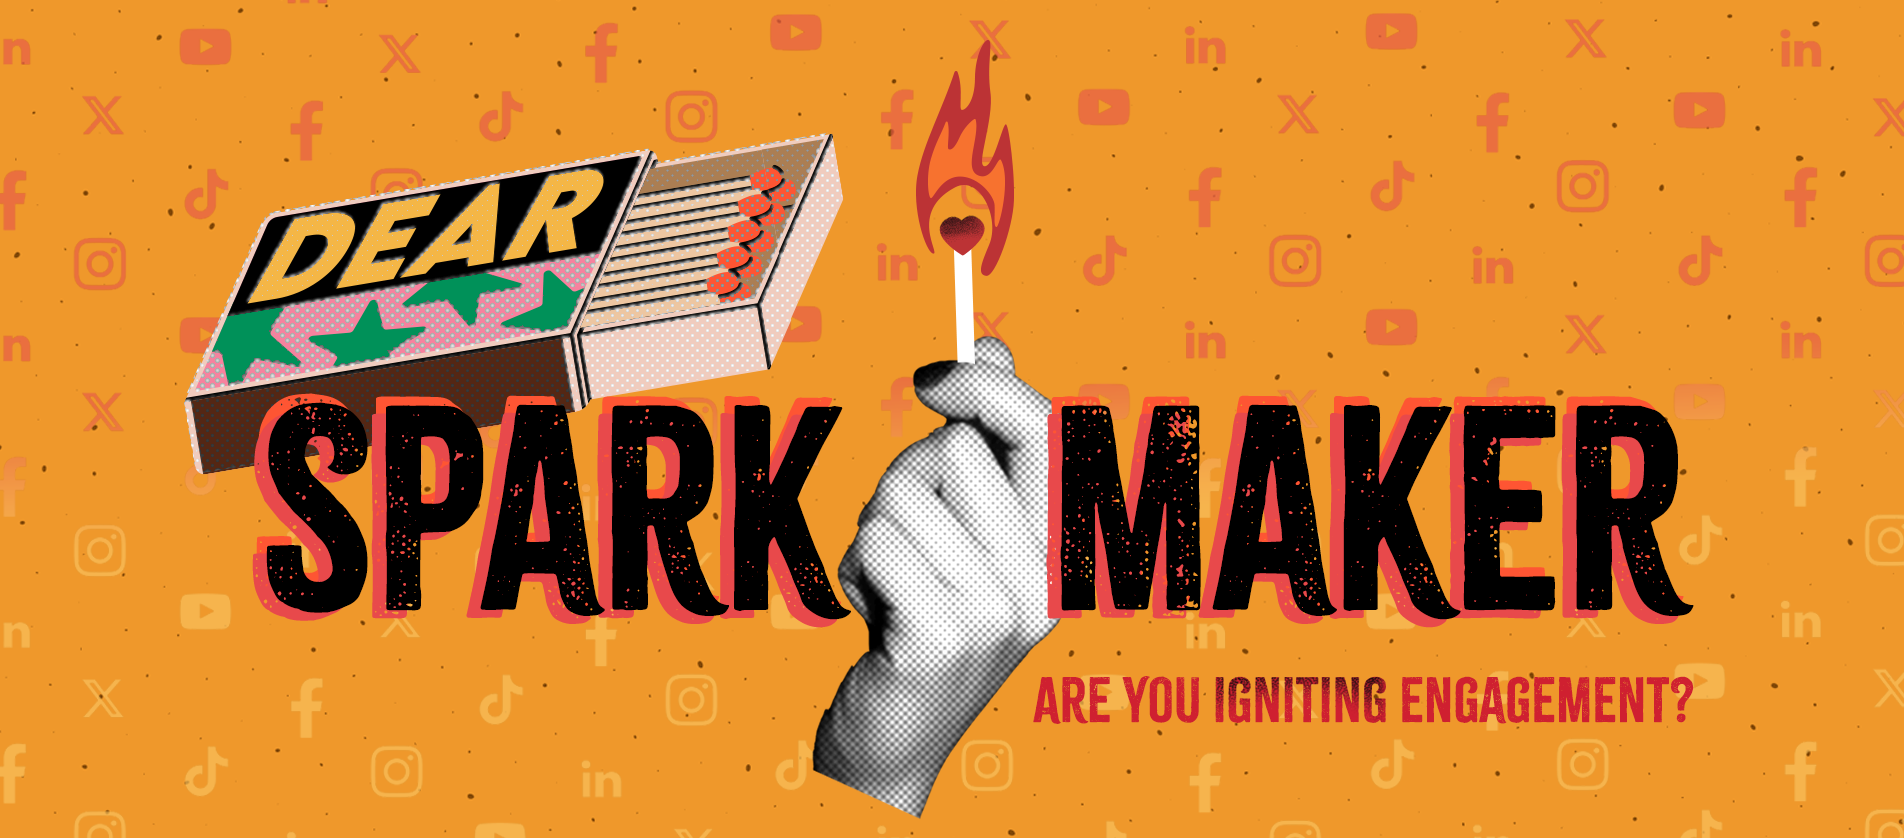 Dear Spark Maker - are you igniting engagememt?